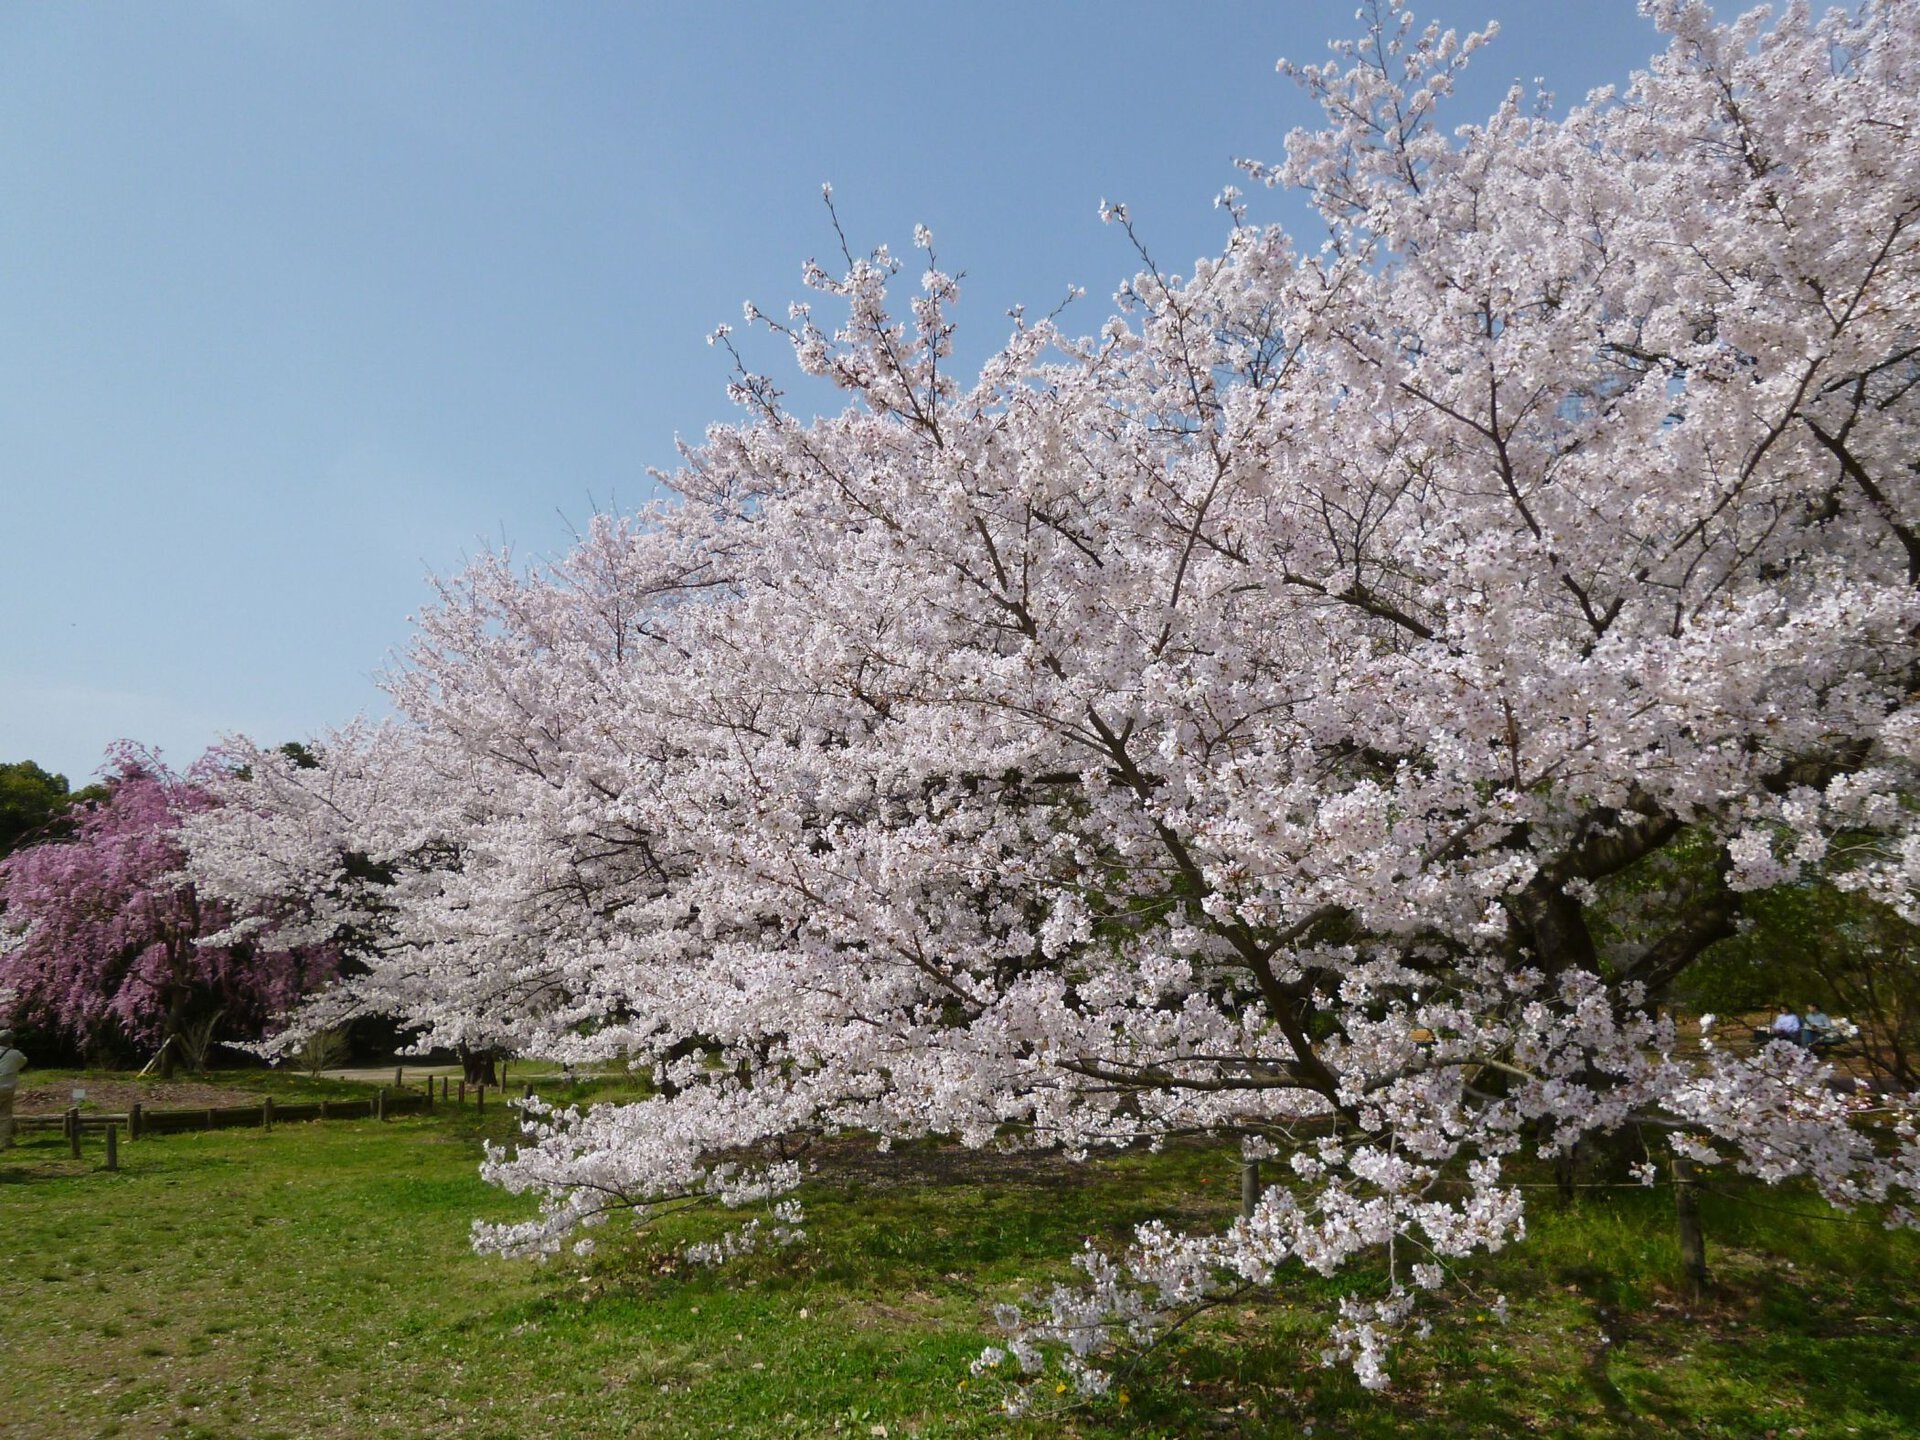 臨時休園 京都府立植物園の桜 桜名所 お花見 ウォーカープラス